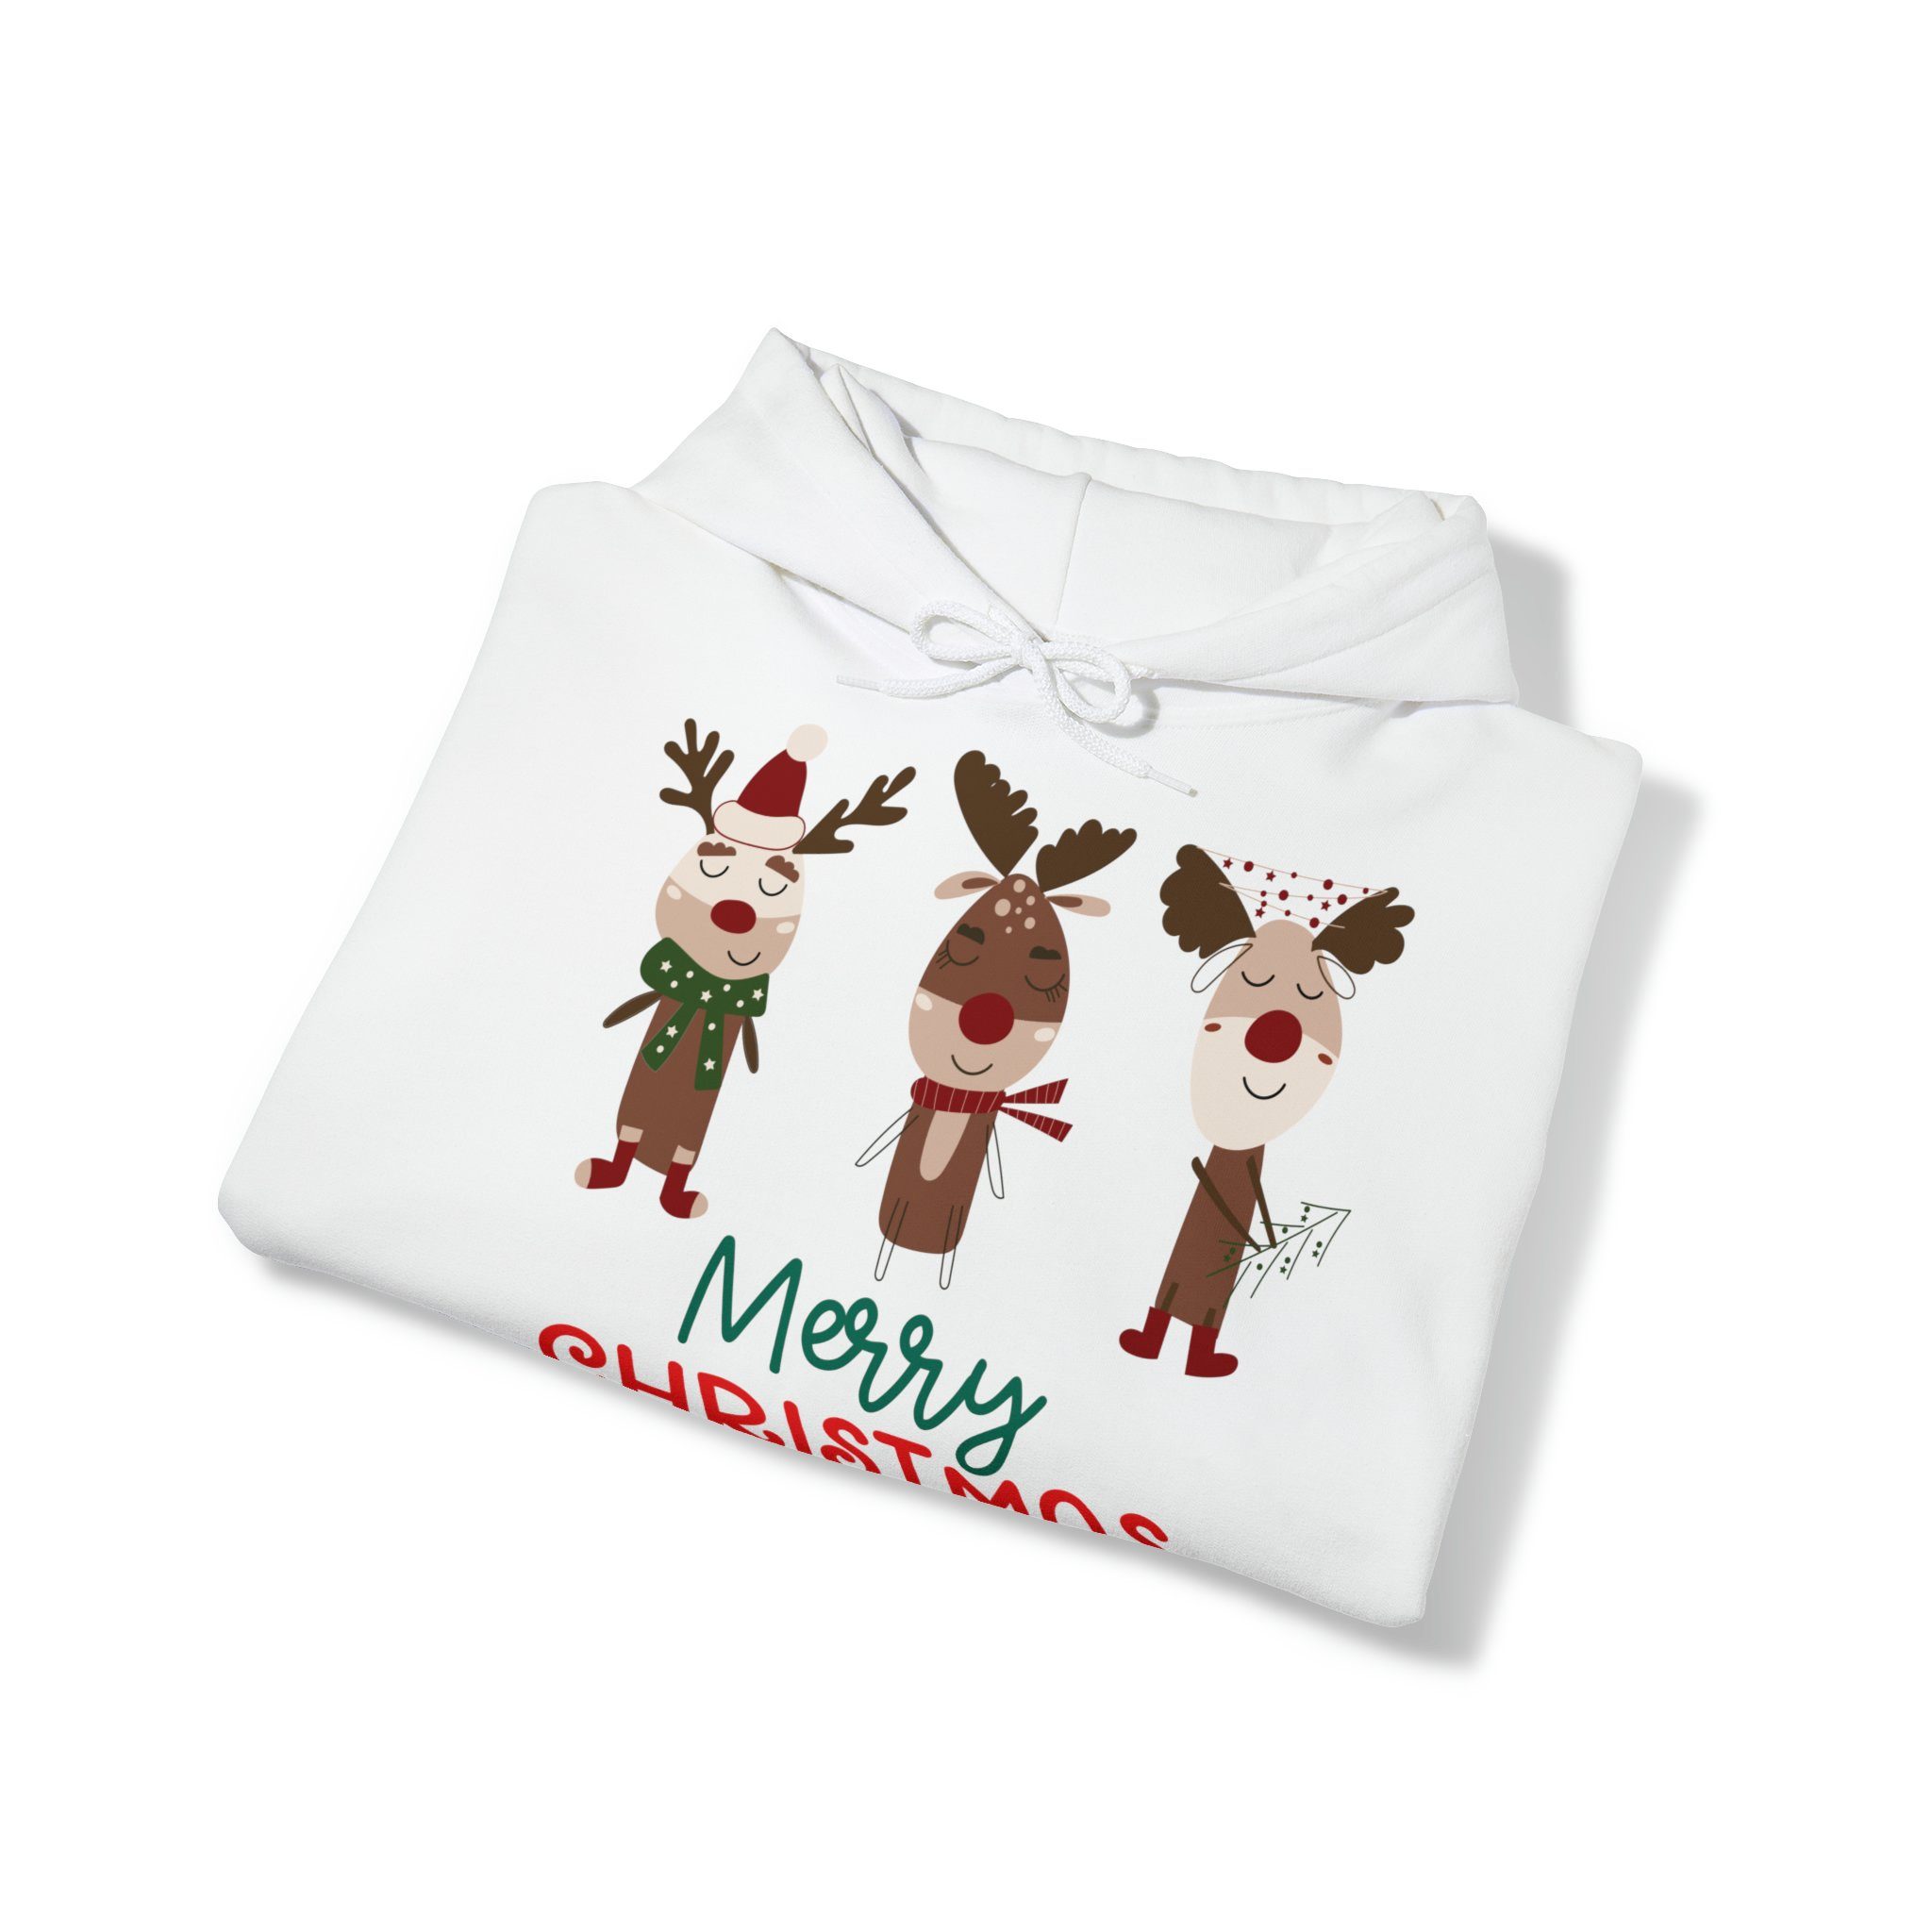 Reindeer White Quality herren Weihnachtssweatshirt Cute weihnachtspullover Elegance Hoodie, Christmas damen